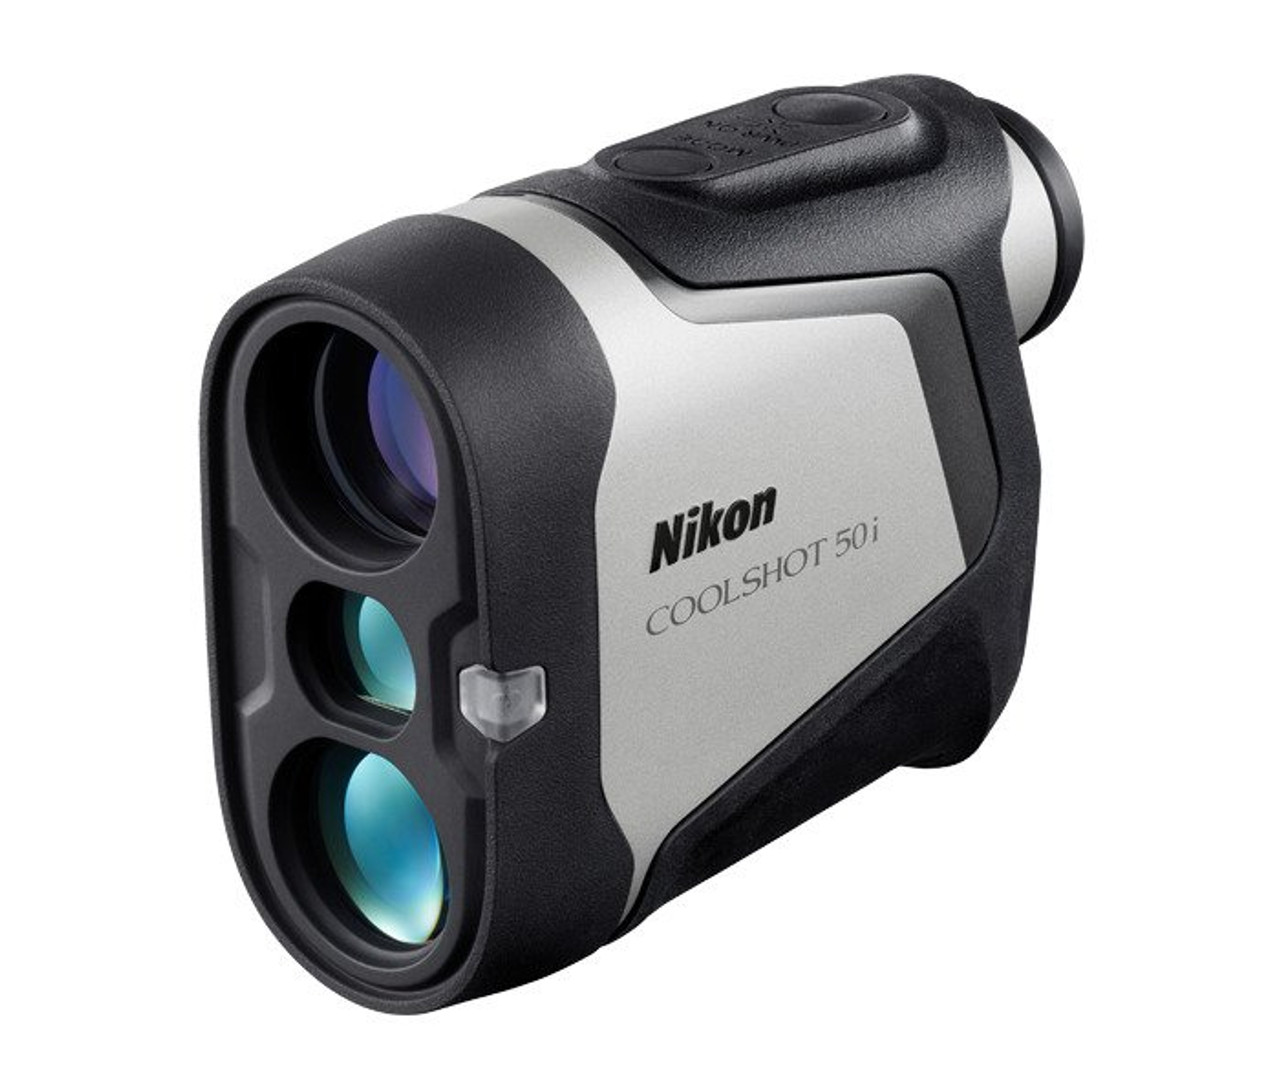 Nikon Golf Coolshot 50i Laser Rangefinder | RockBottomGolf.com